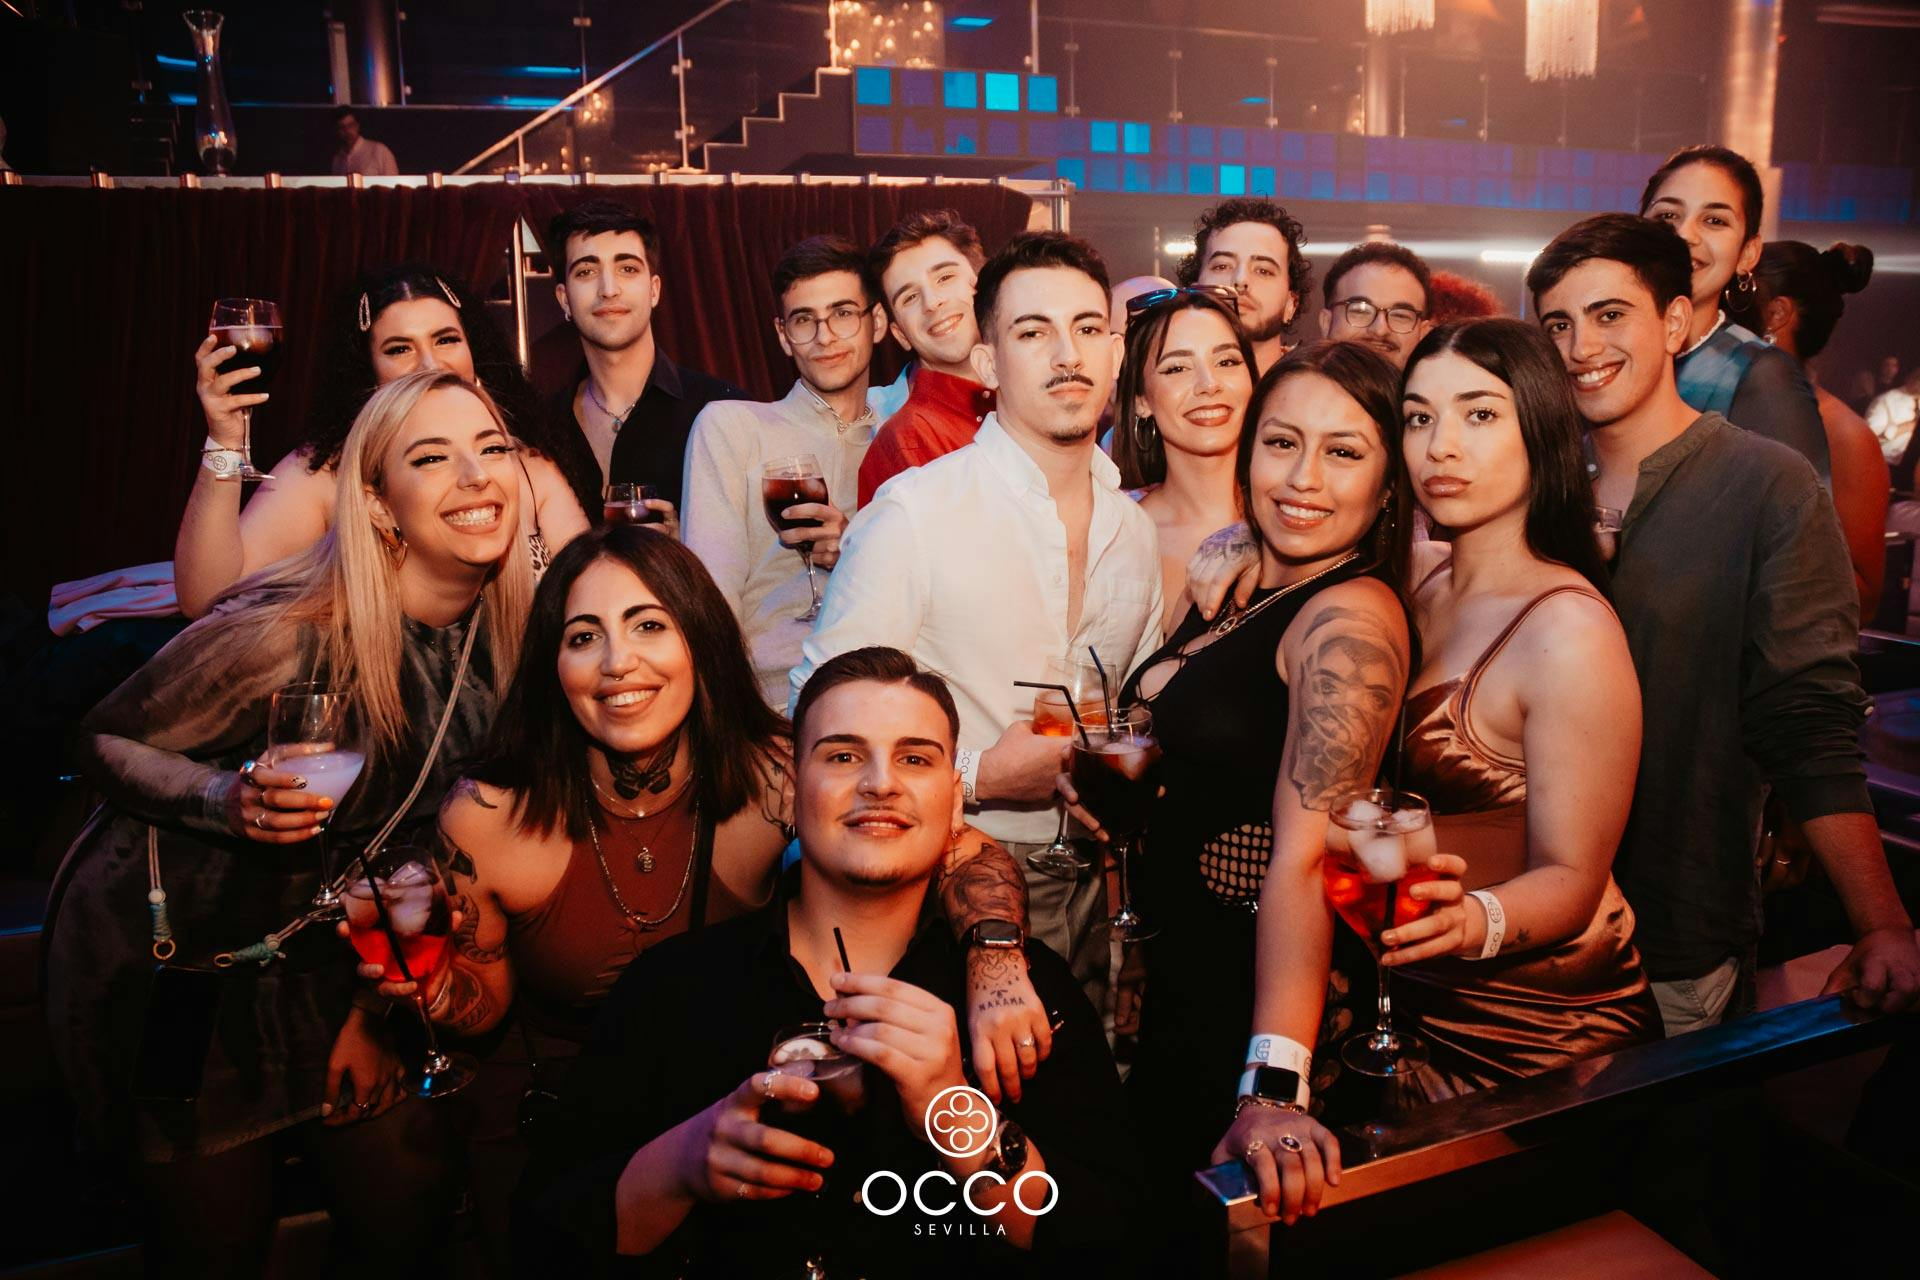 Occo-selfie-grupo-amigos-grande-fiesta-la-bambola